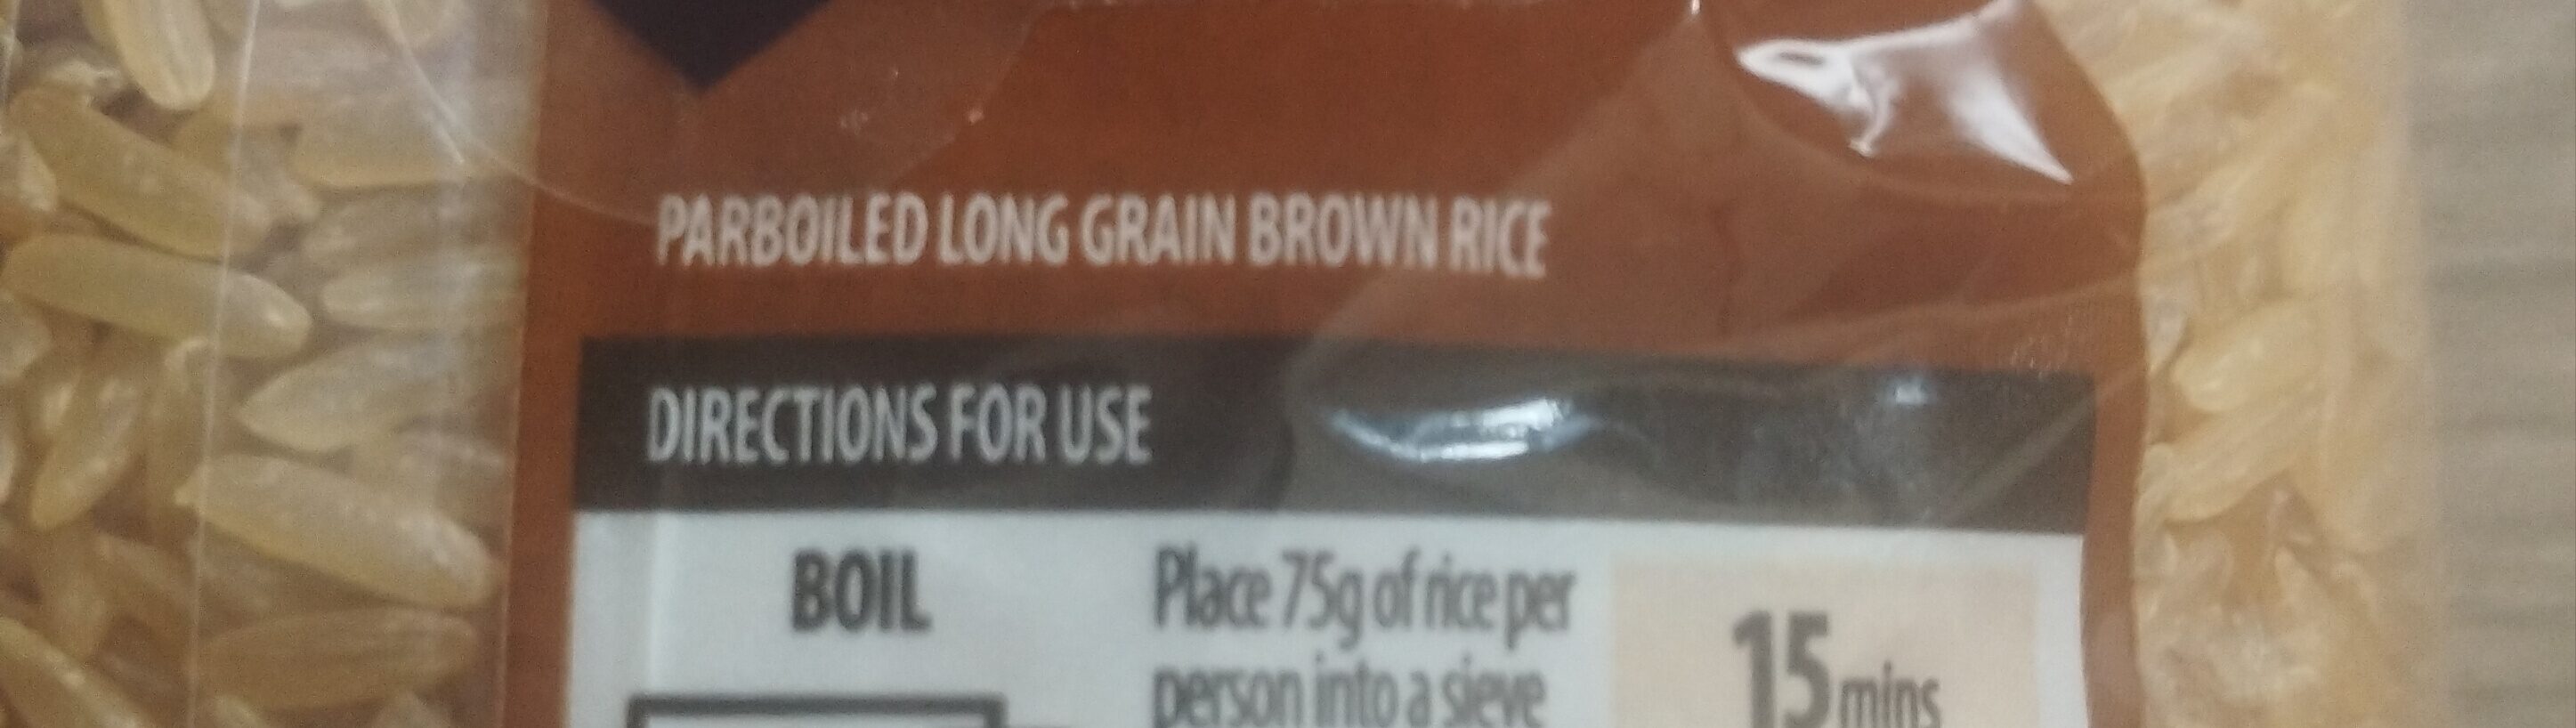 Easy cook brown rice - Ingredients